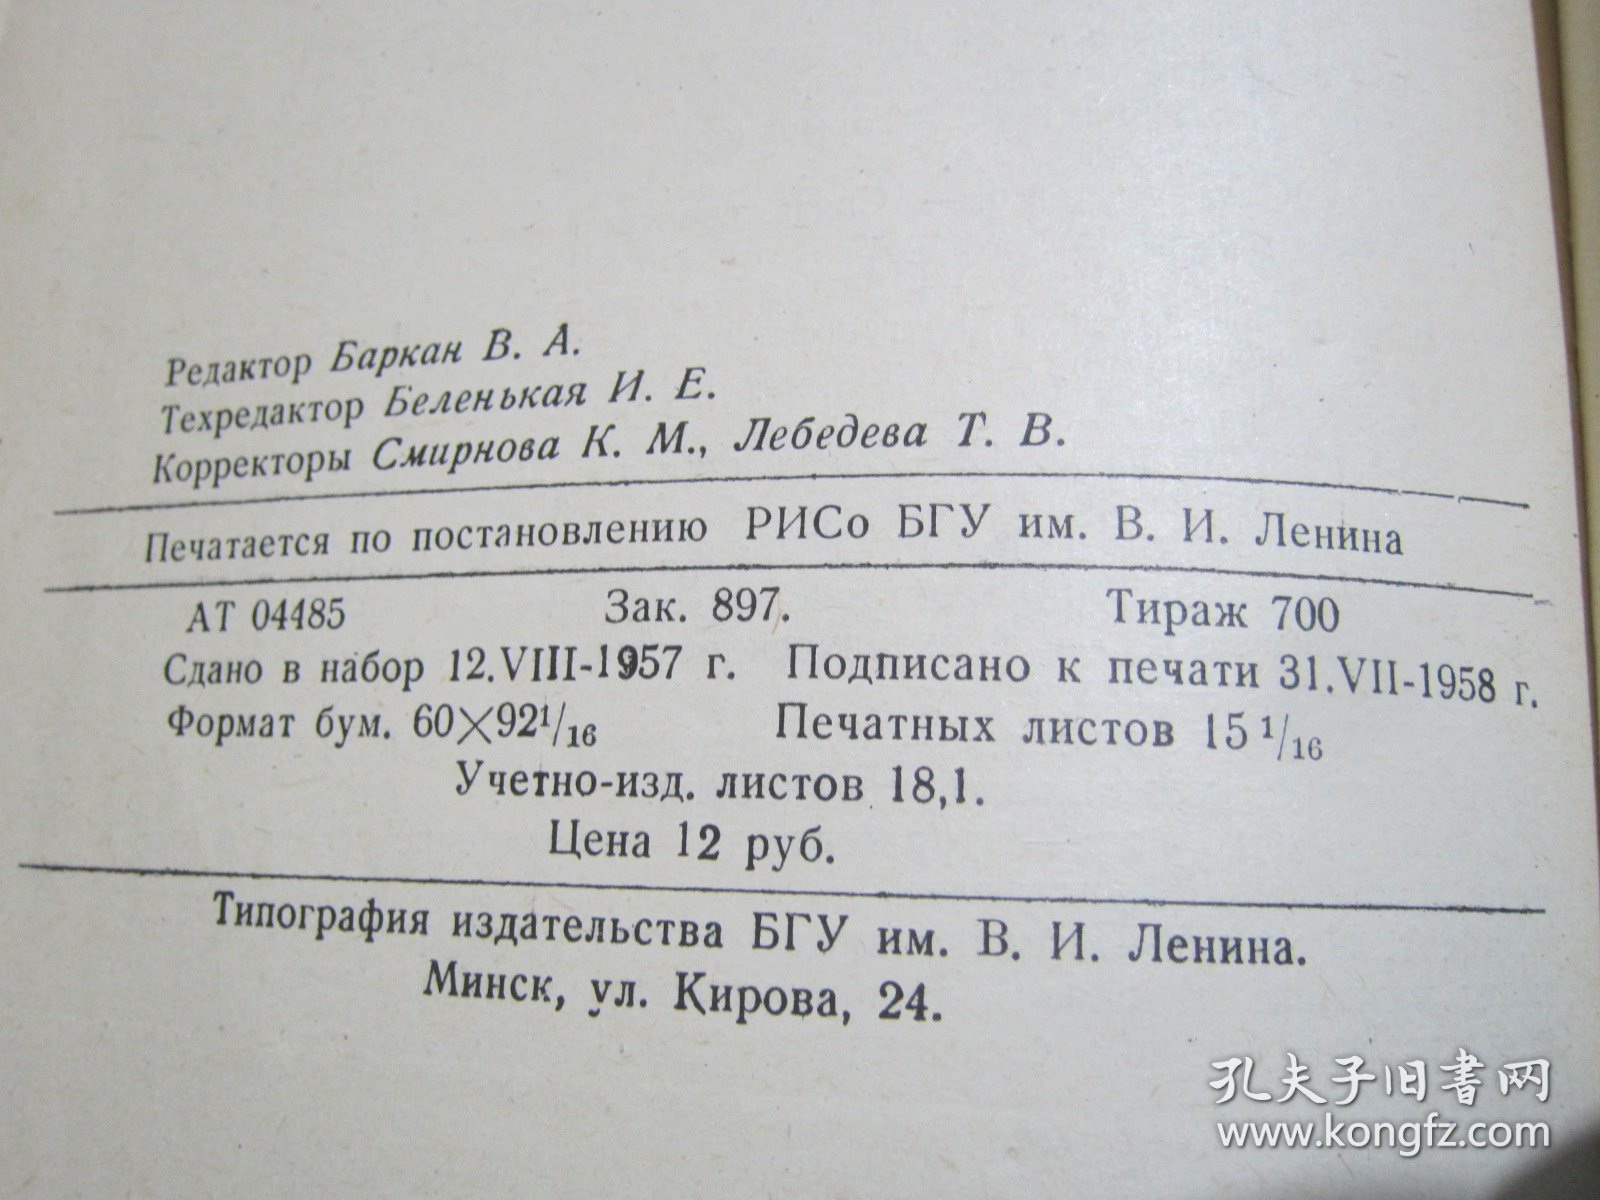 俄文原版书 白俄罗斯国立大学学报物理之部 第41册